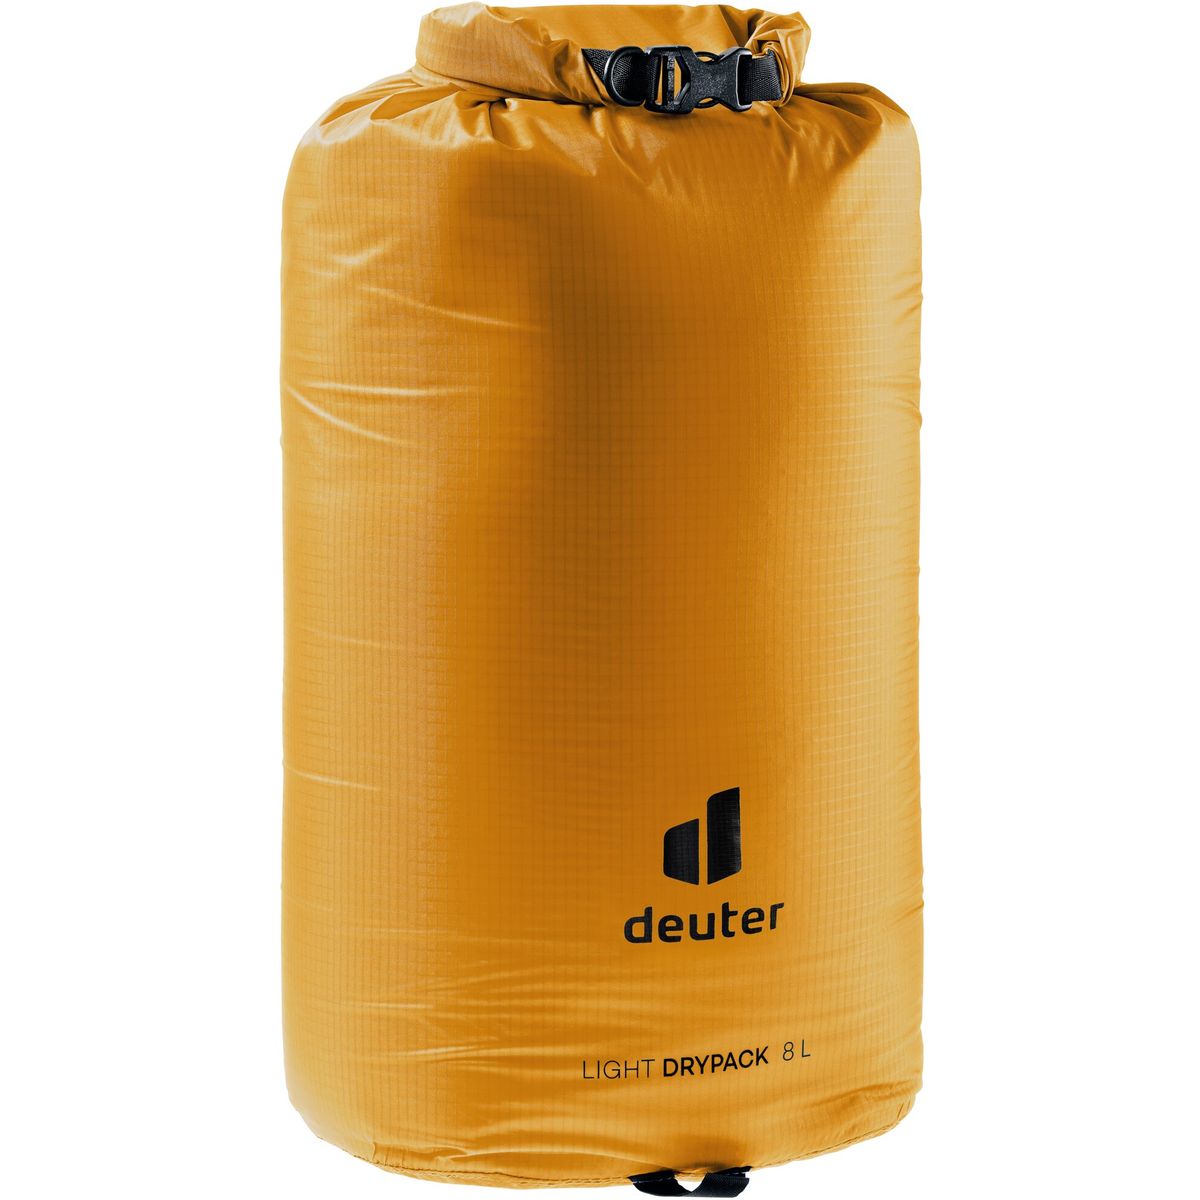 Deuter Light Drypack 8 Beutel / Kleintasche